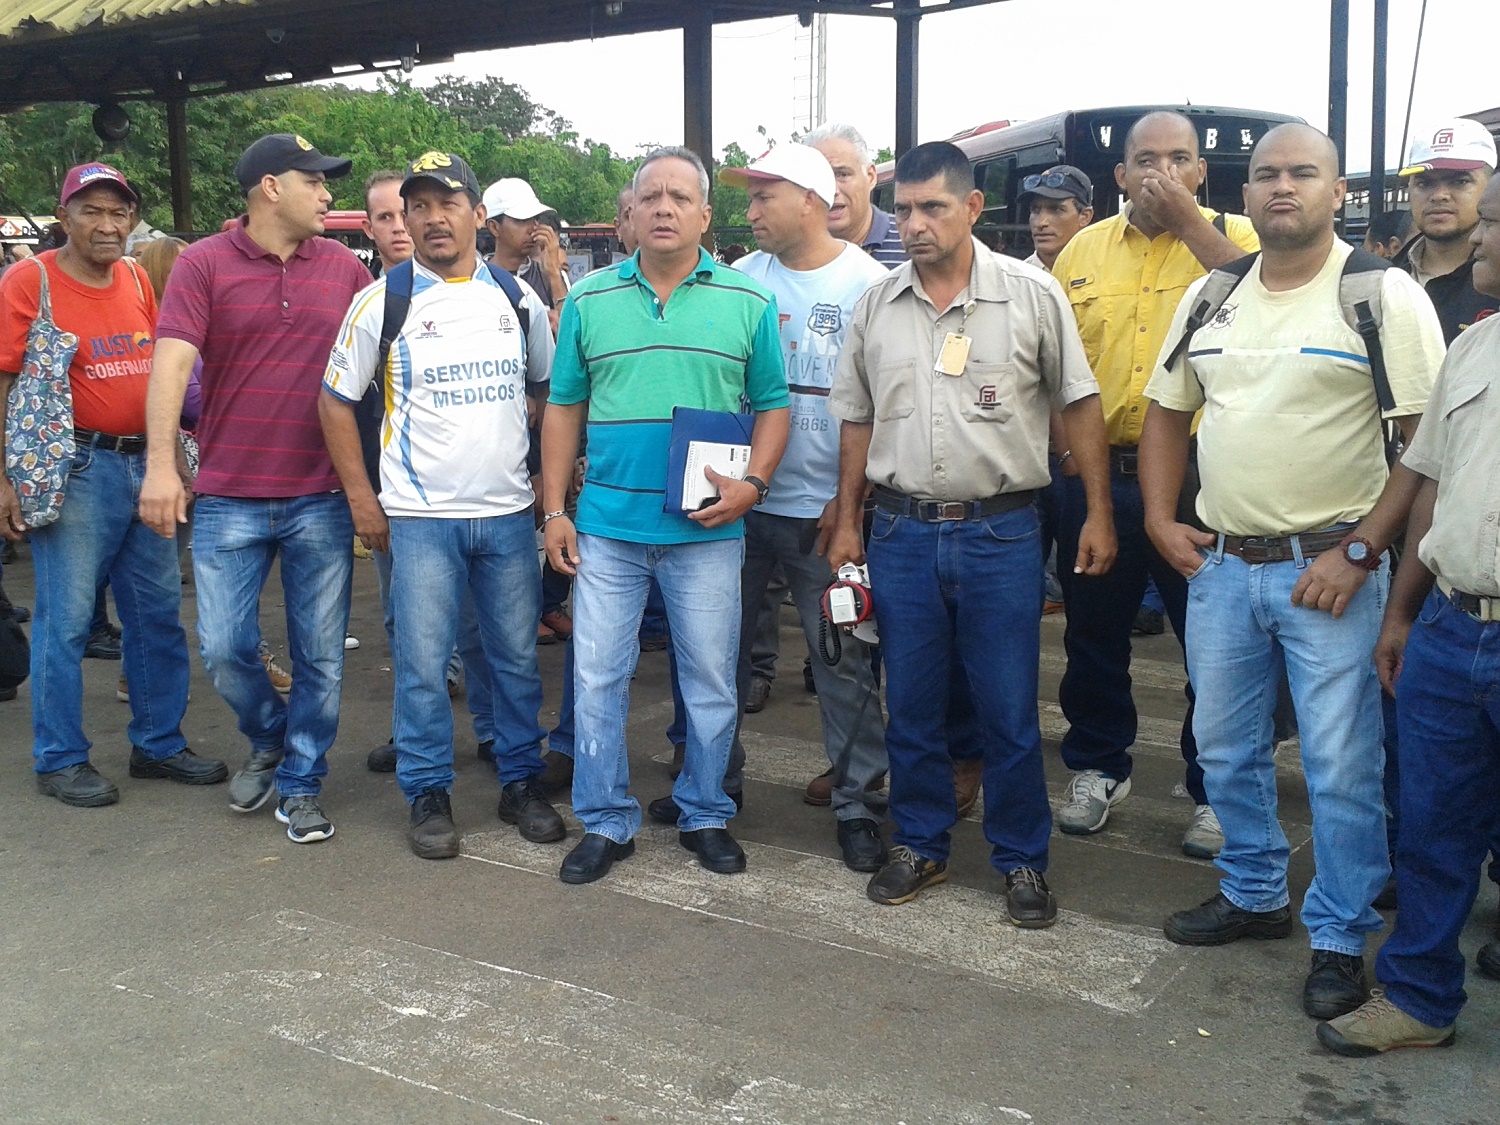 Vente Bolívar respalda a los trabajadores ferromineros: No están solos frente a las mafias (Comunicado)